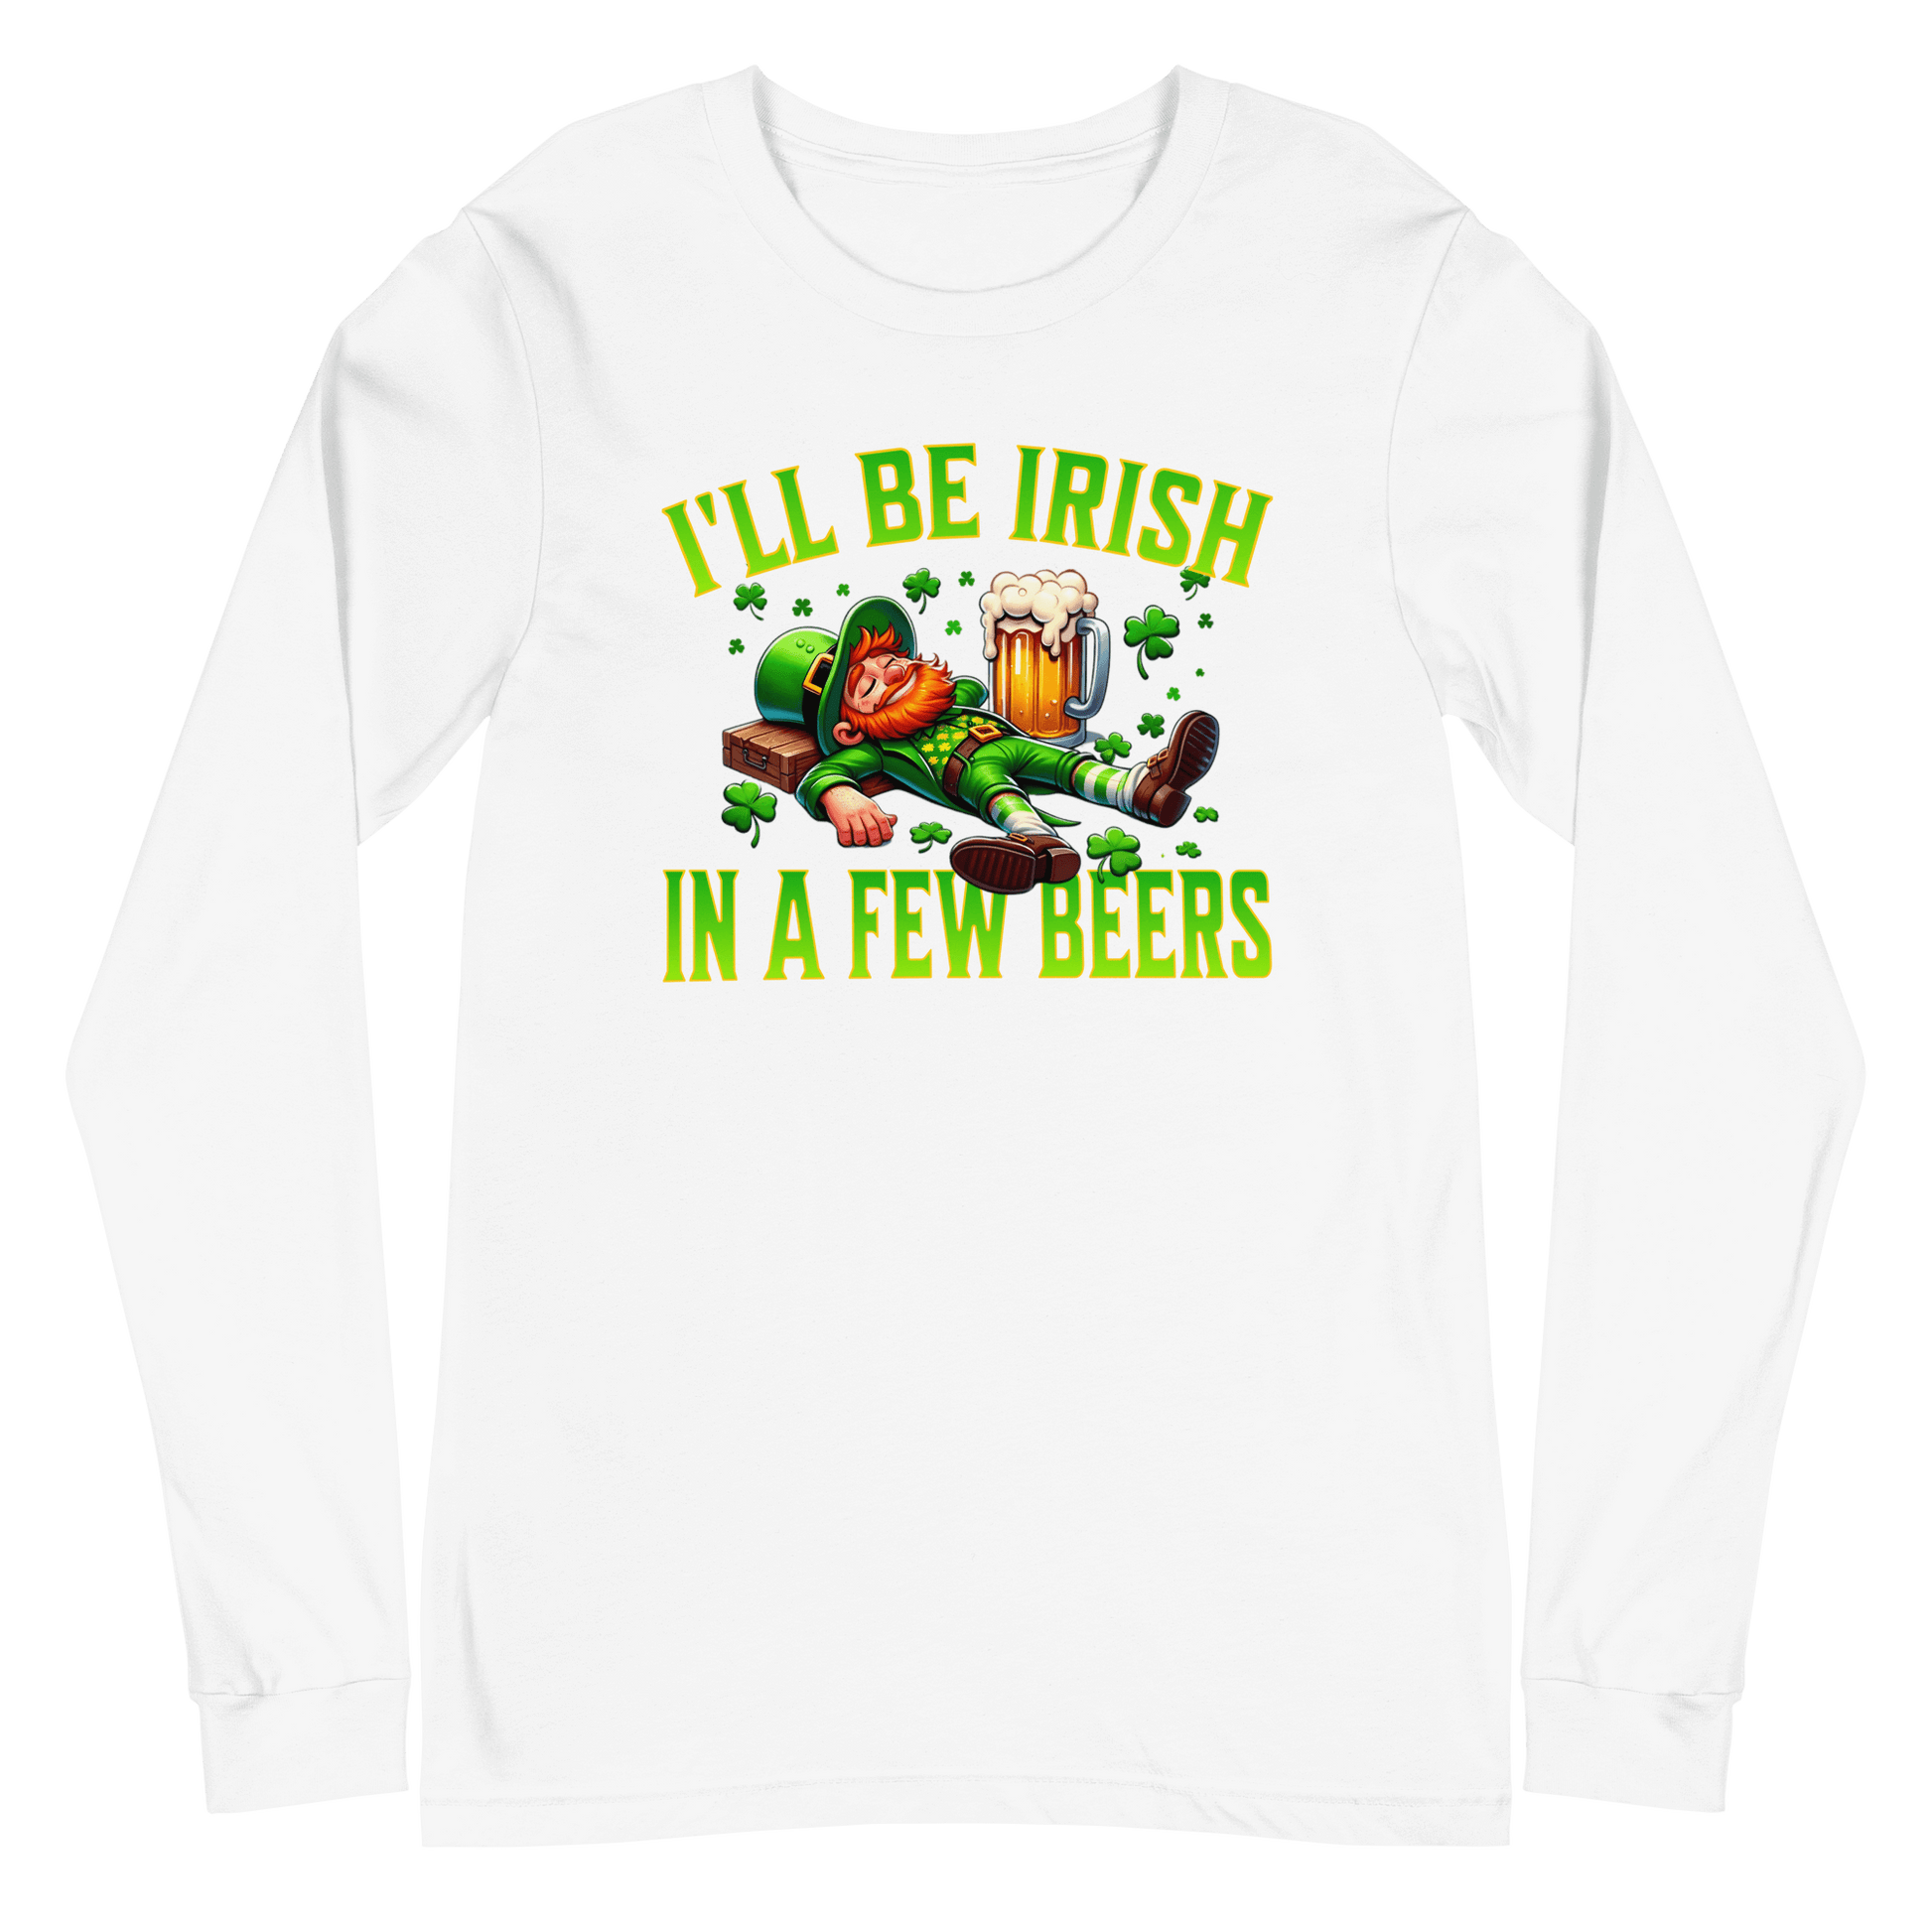 I'll Be Irish In a Few Beers Long Sleeve Tee